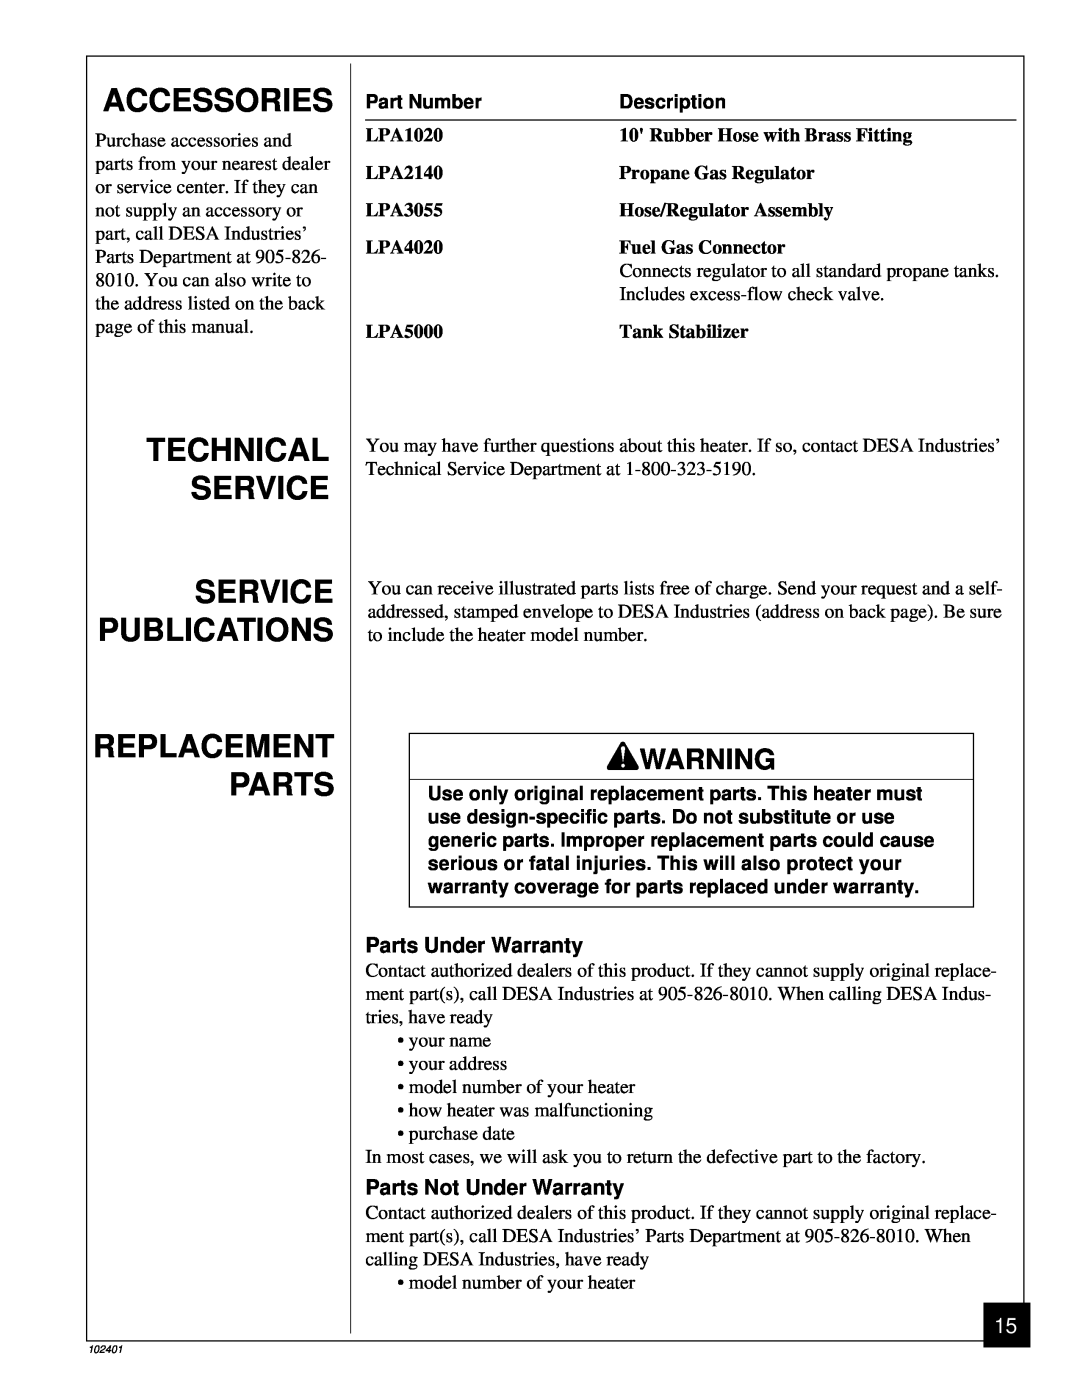 Desa RCLP50A Accessories, Technical Service Service Publications, Replacement Parts, Parts Under Warranty, Part Number 